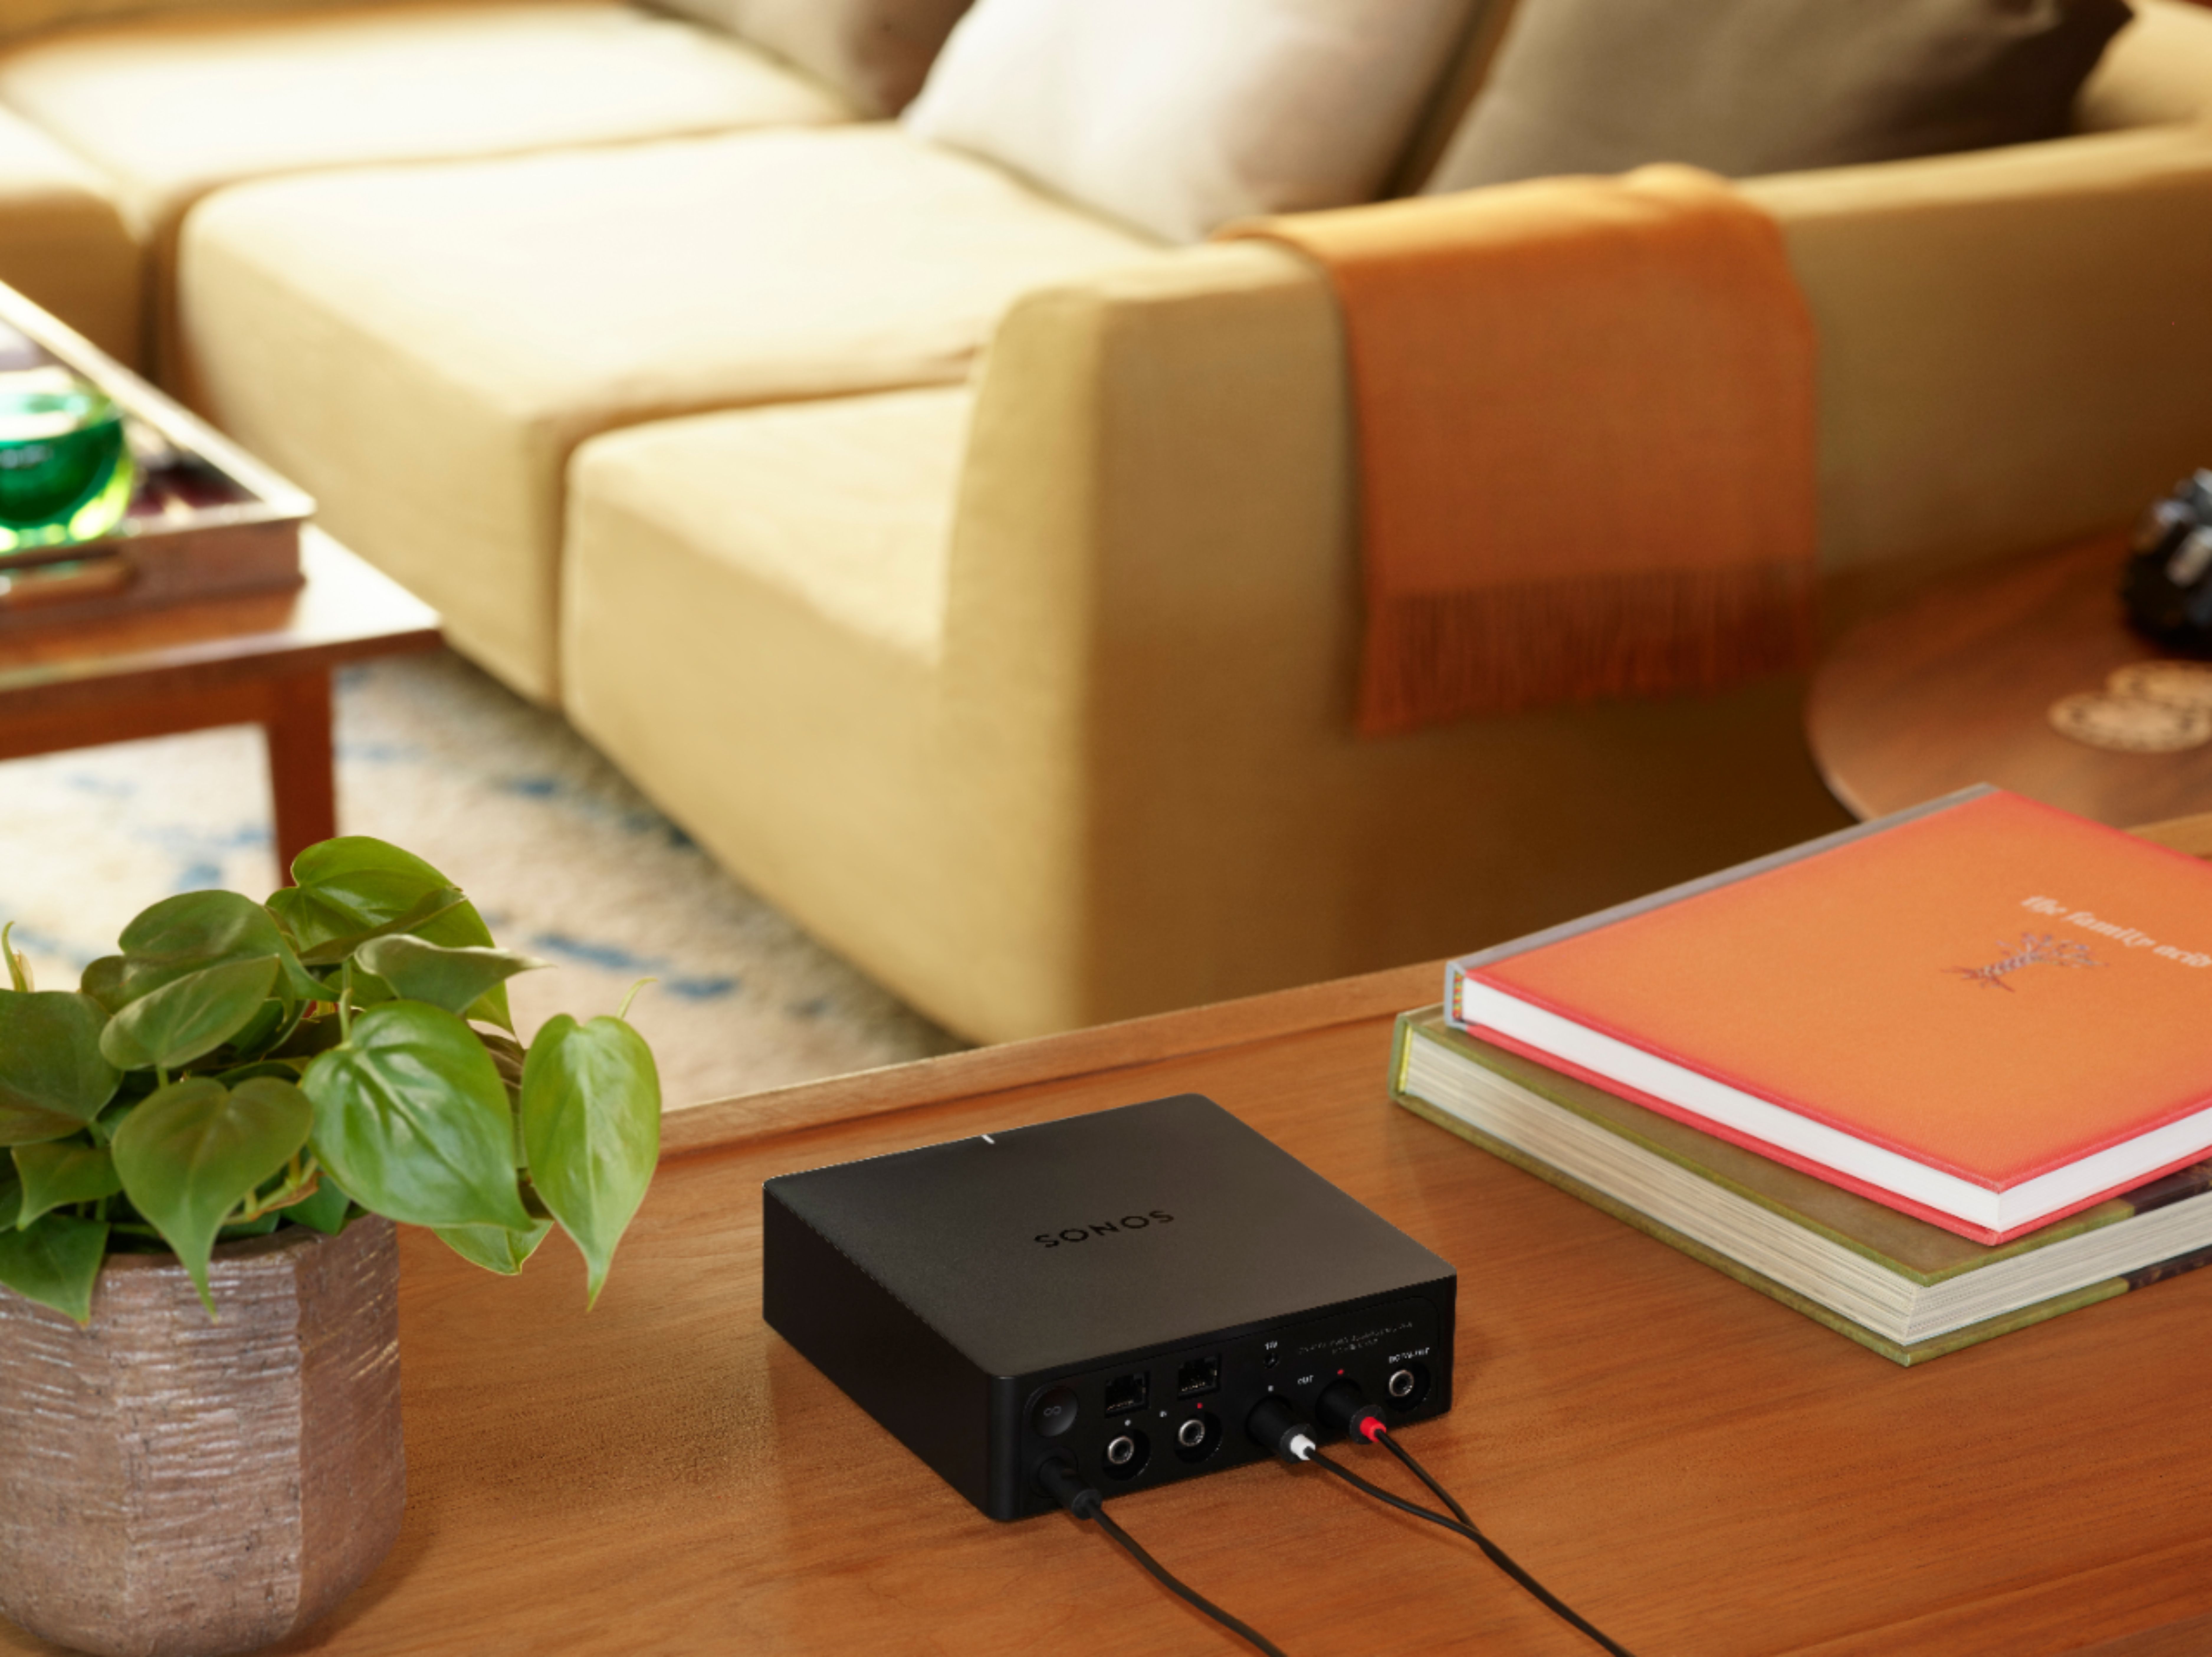 Sonos Port Streaming Media Player Matte Black PORT1US1BLK - Best Buy